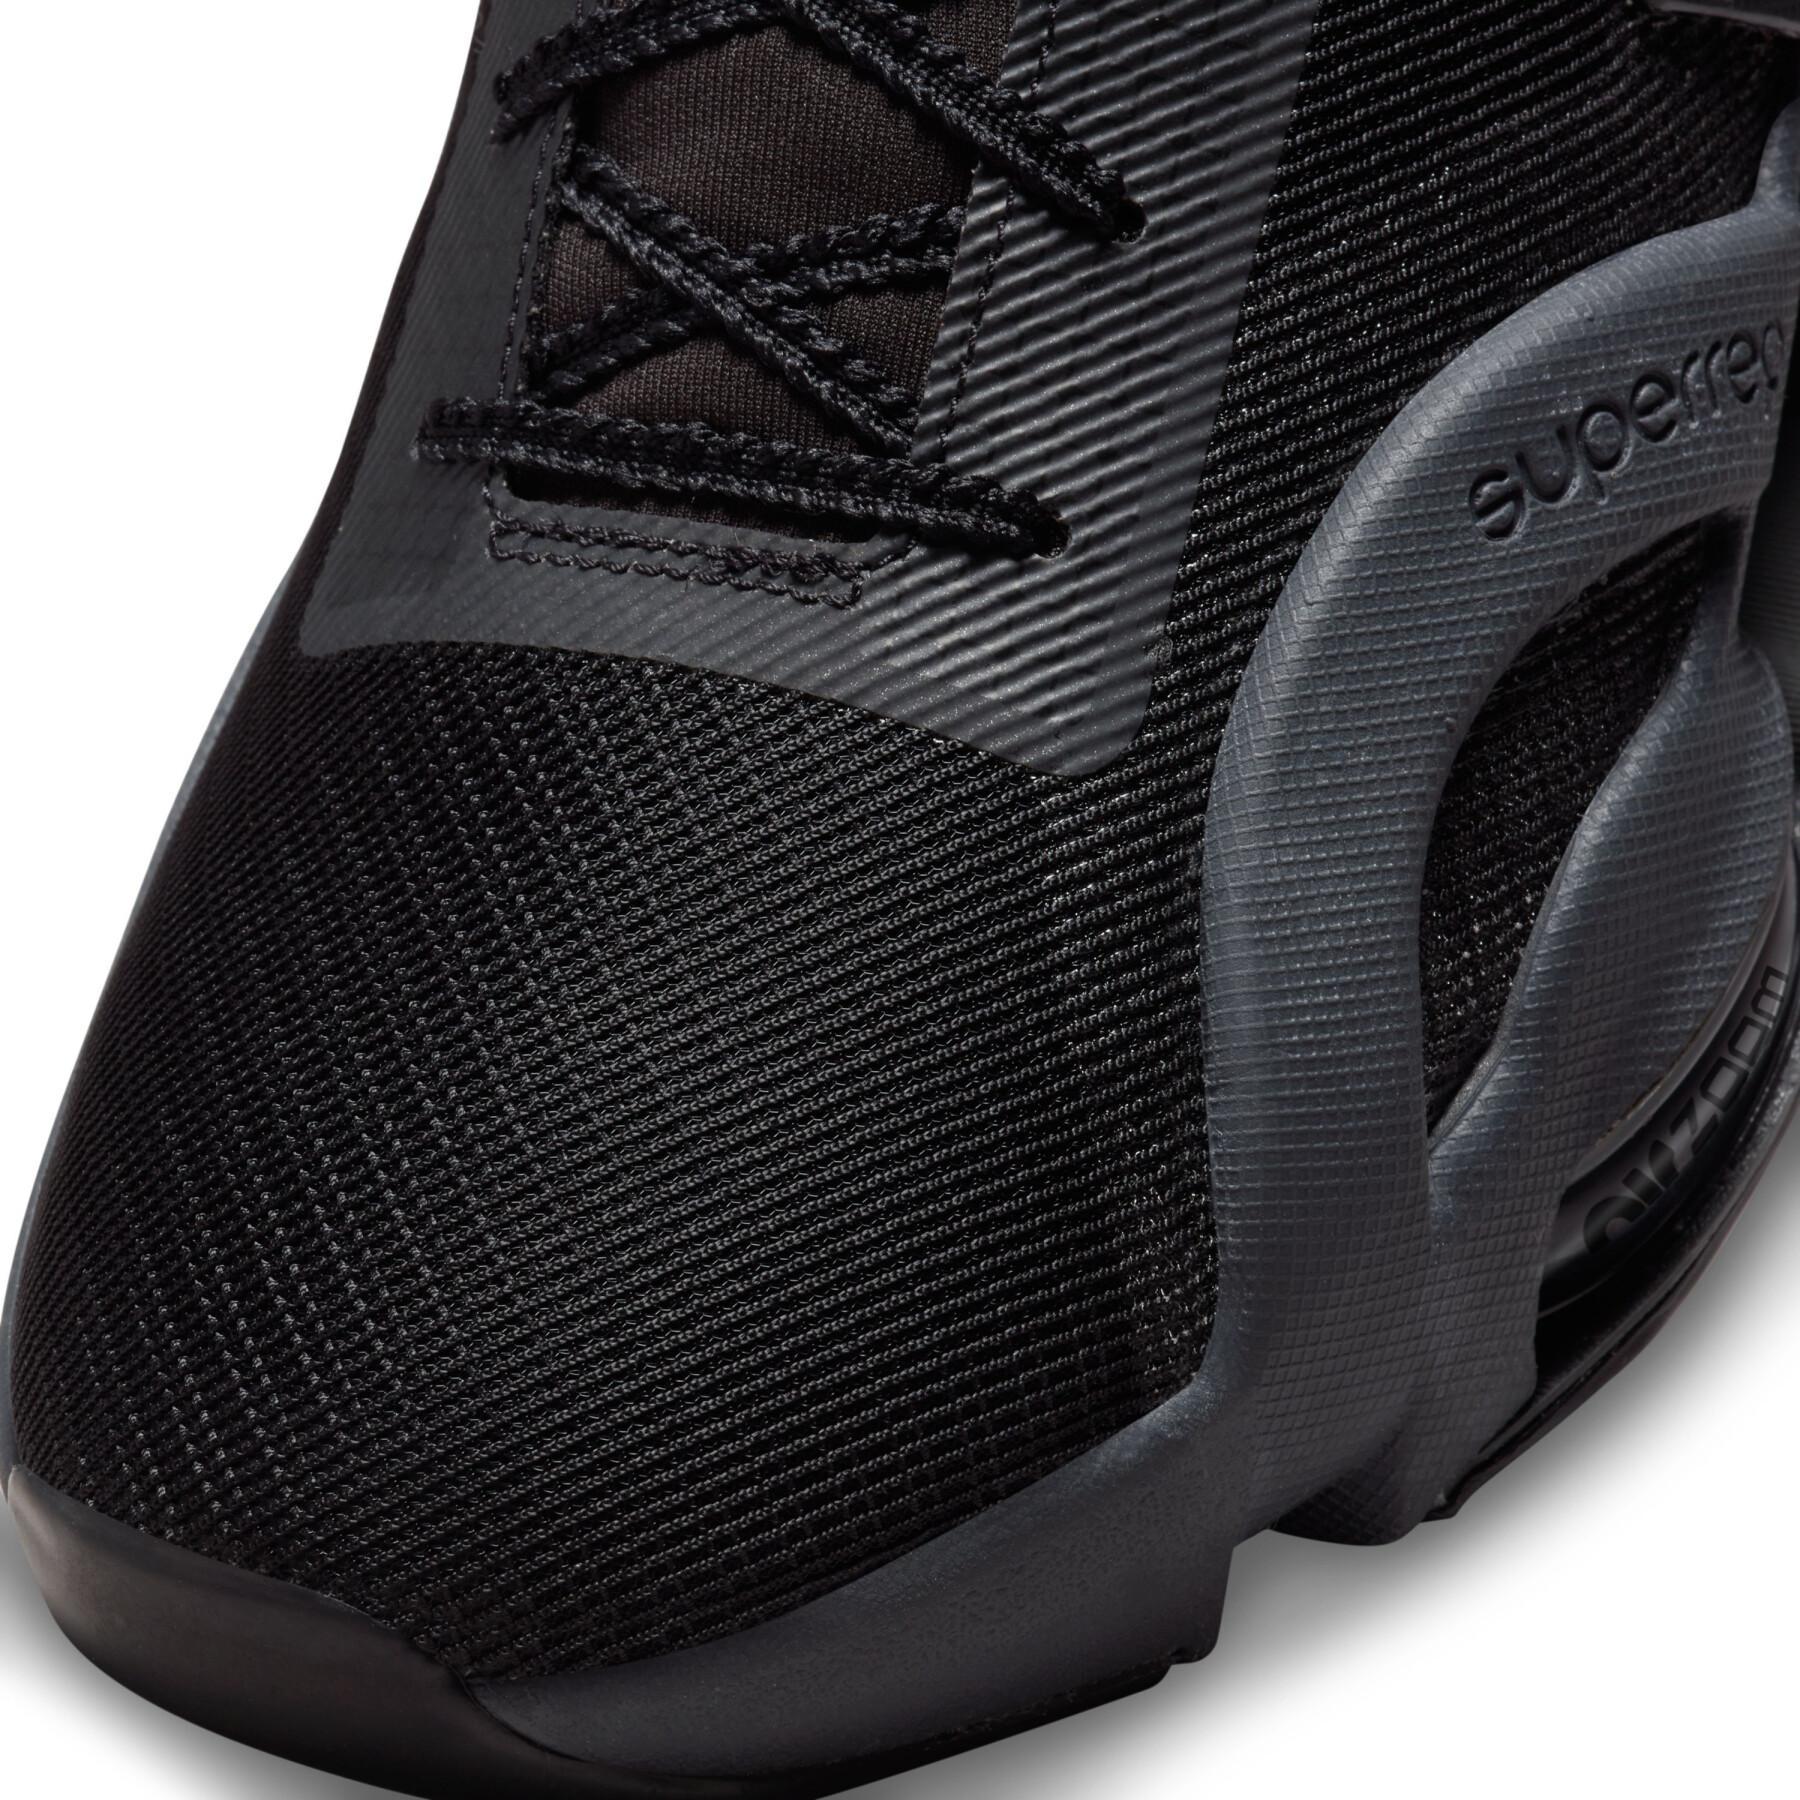 Zapatillas de cross training Nike Air Zoom SuperRep 3